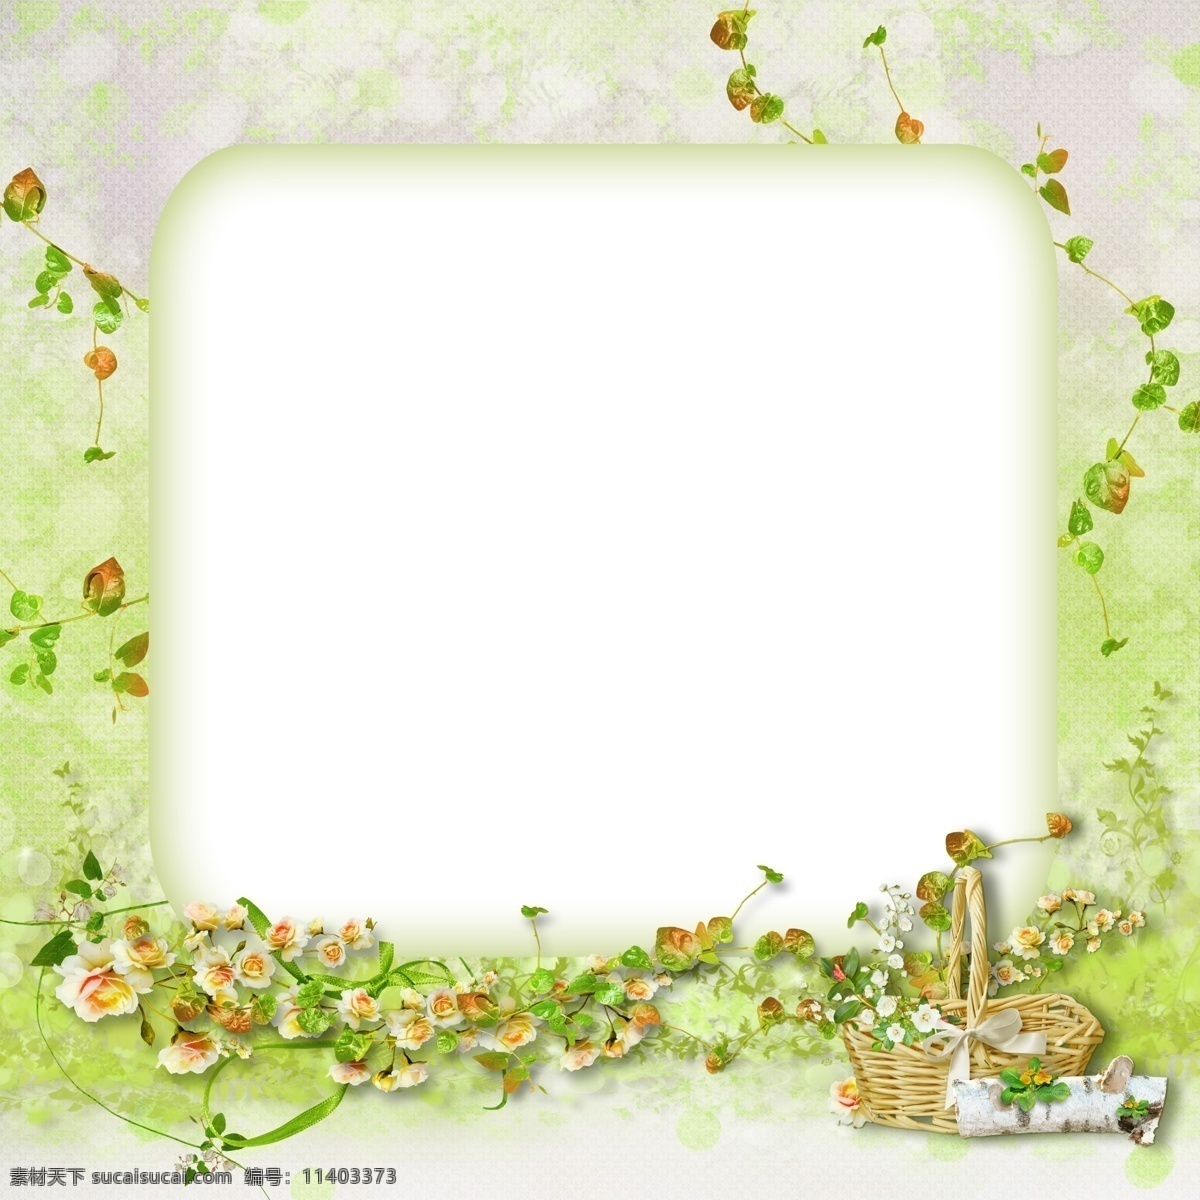 儿童相框 模版下载 相框 绿色 春天 花篮 花朵 藤蔓 绿叶 儿童 青涩 儿童摄影模板 摄影模板 源文件